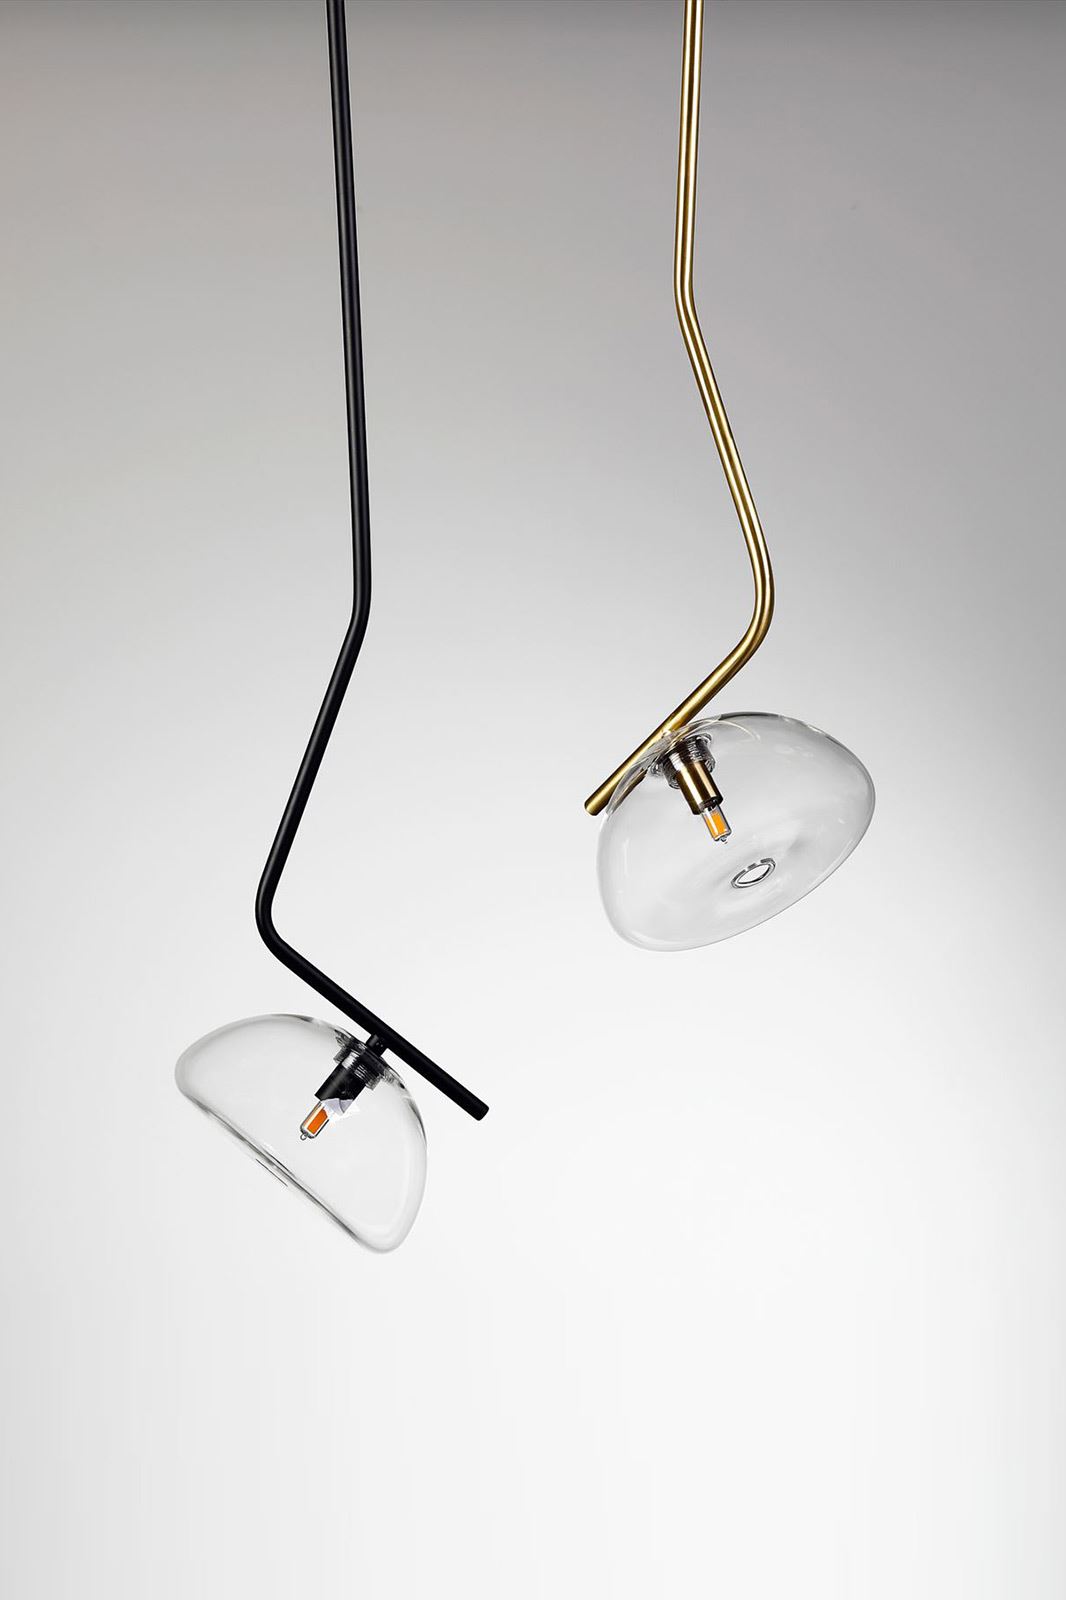 גופי תאורה בקטגוריית מנורות תליה שם המוצר Topaz • Dori Kimhi Lighting 9295